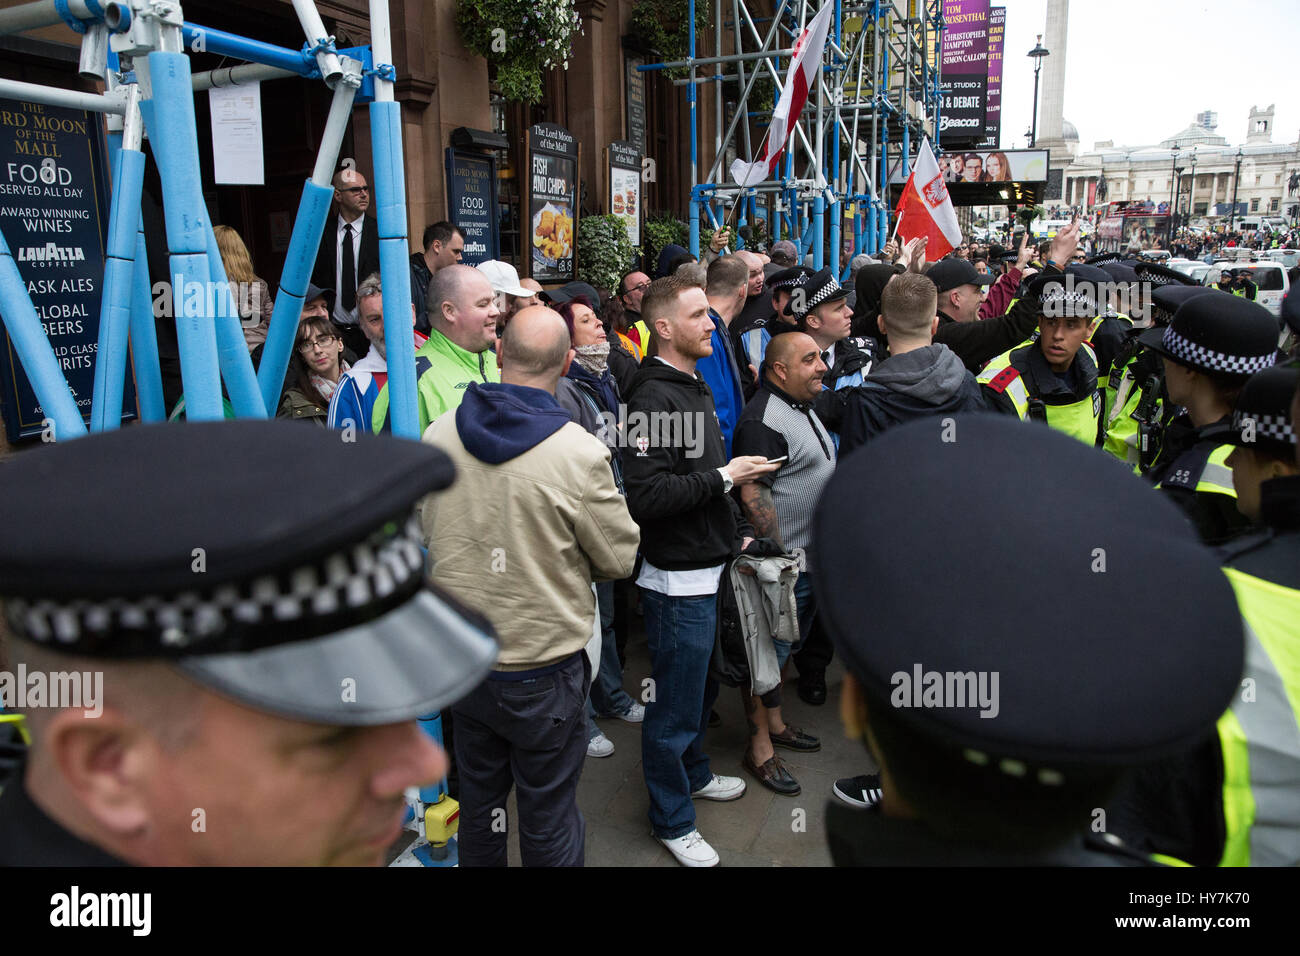 Londra, Regno Unito. Il 1 aprile, 2017. La polizia sotto forma di un cordone intorno a membri di estrema destra Inglese Lega di difesa al di fuori del Signore la luna del Mall pub di Whitehall. Credito: Mark Kerrison/Alamy Live News Foto Stock